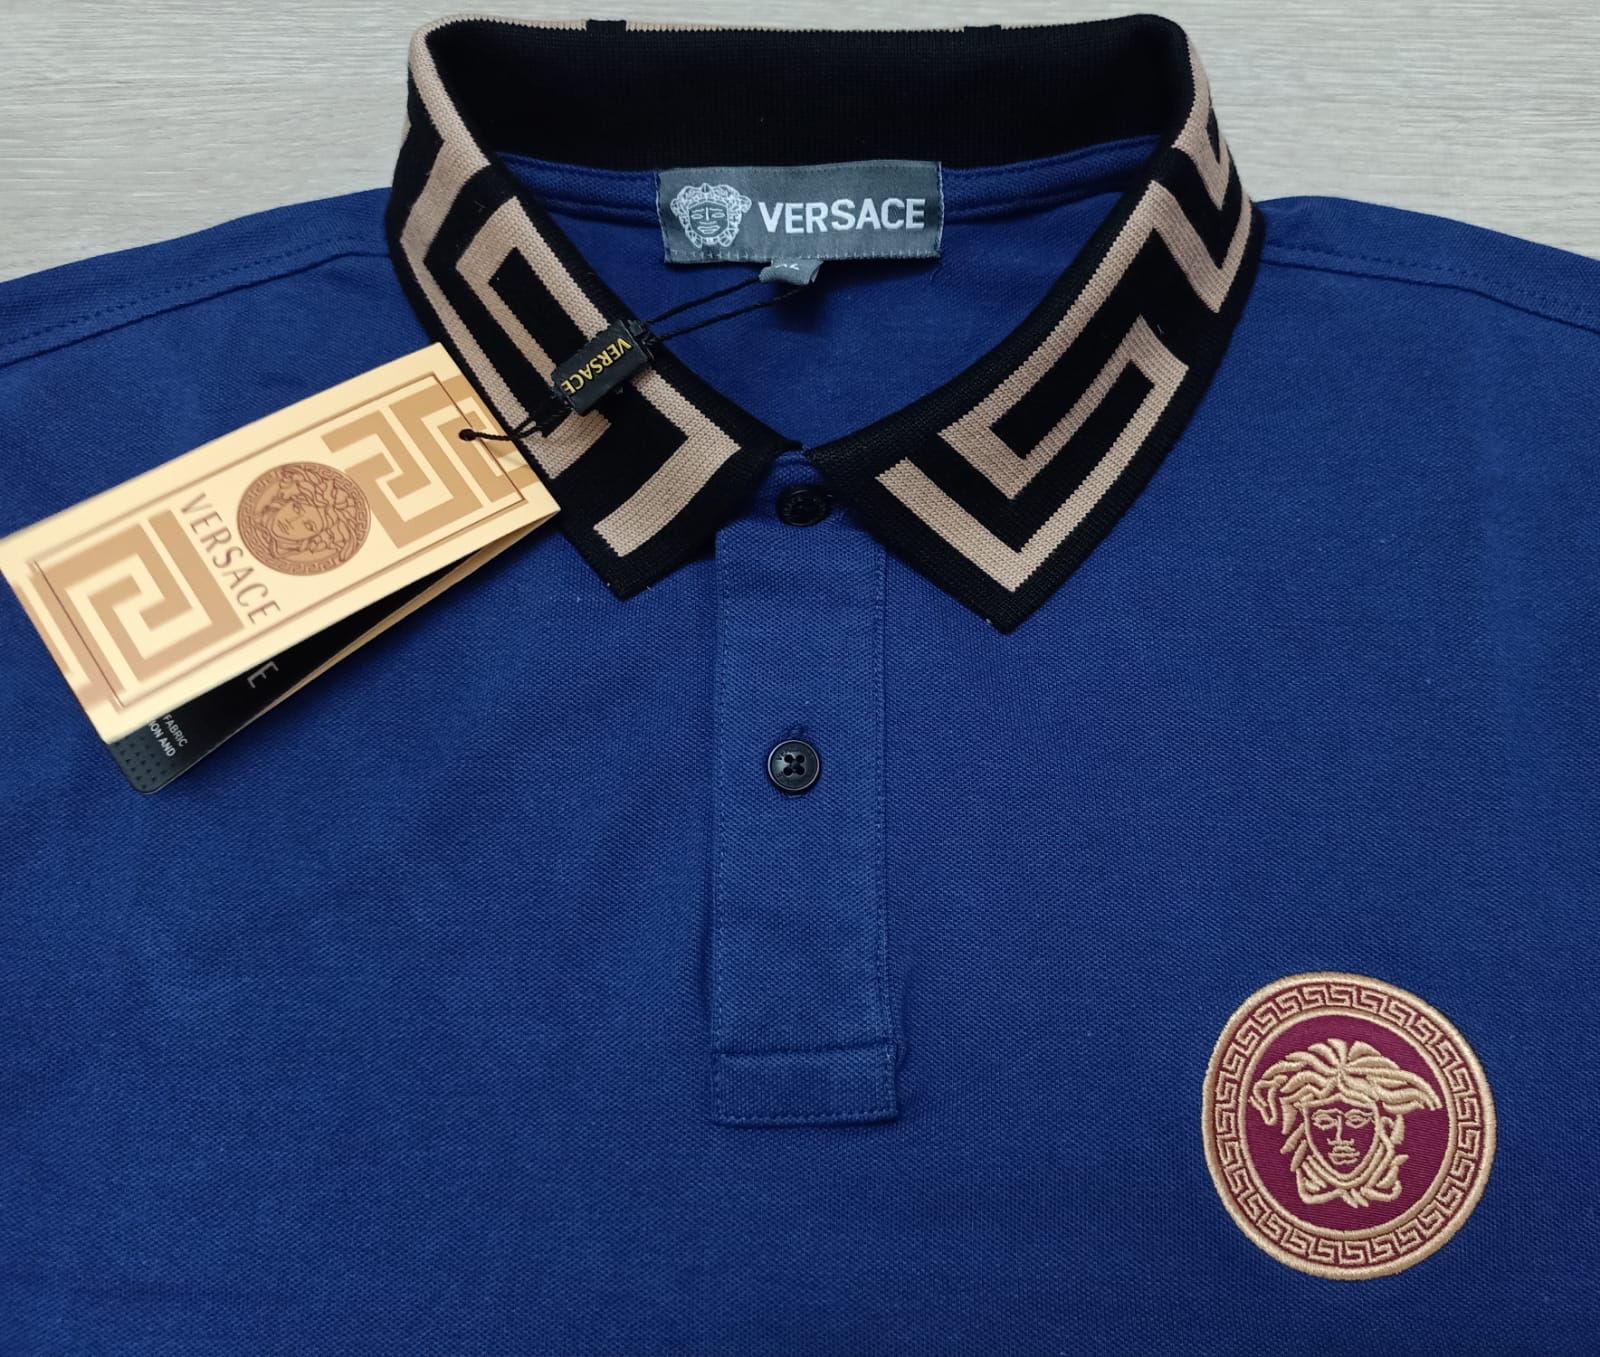 Imported Super Premium Cotton Polo Shirt For Men - ZPL04 - Royal Blue